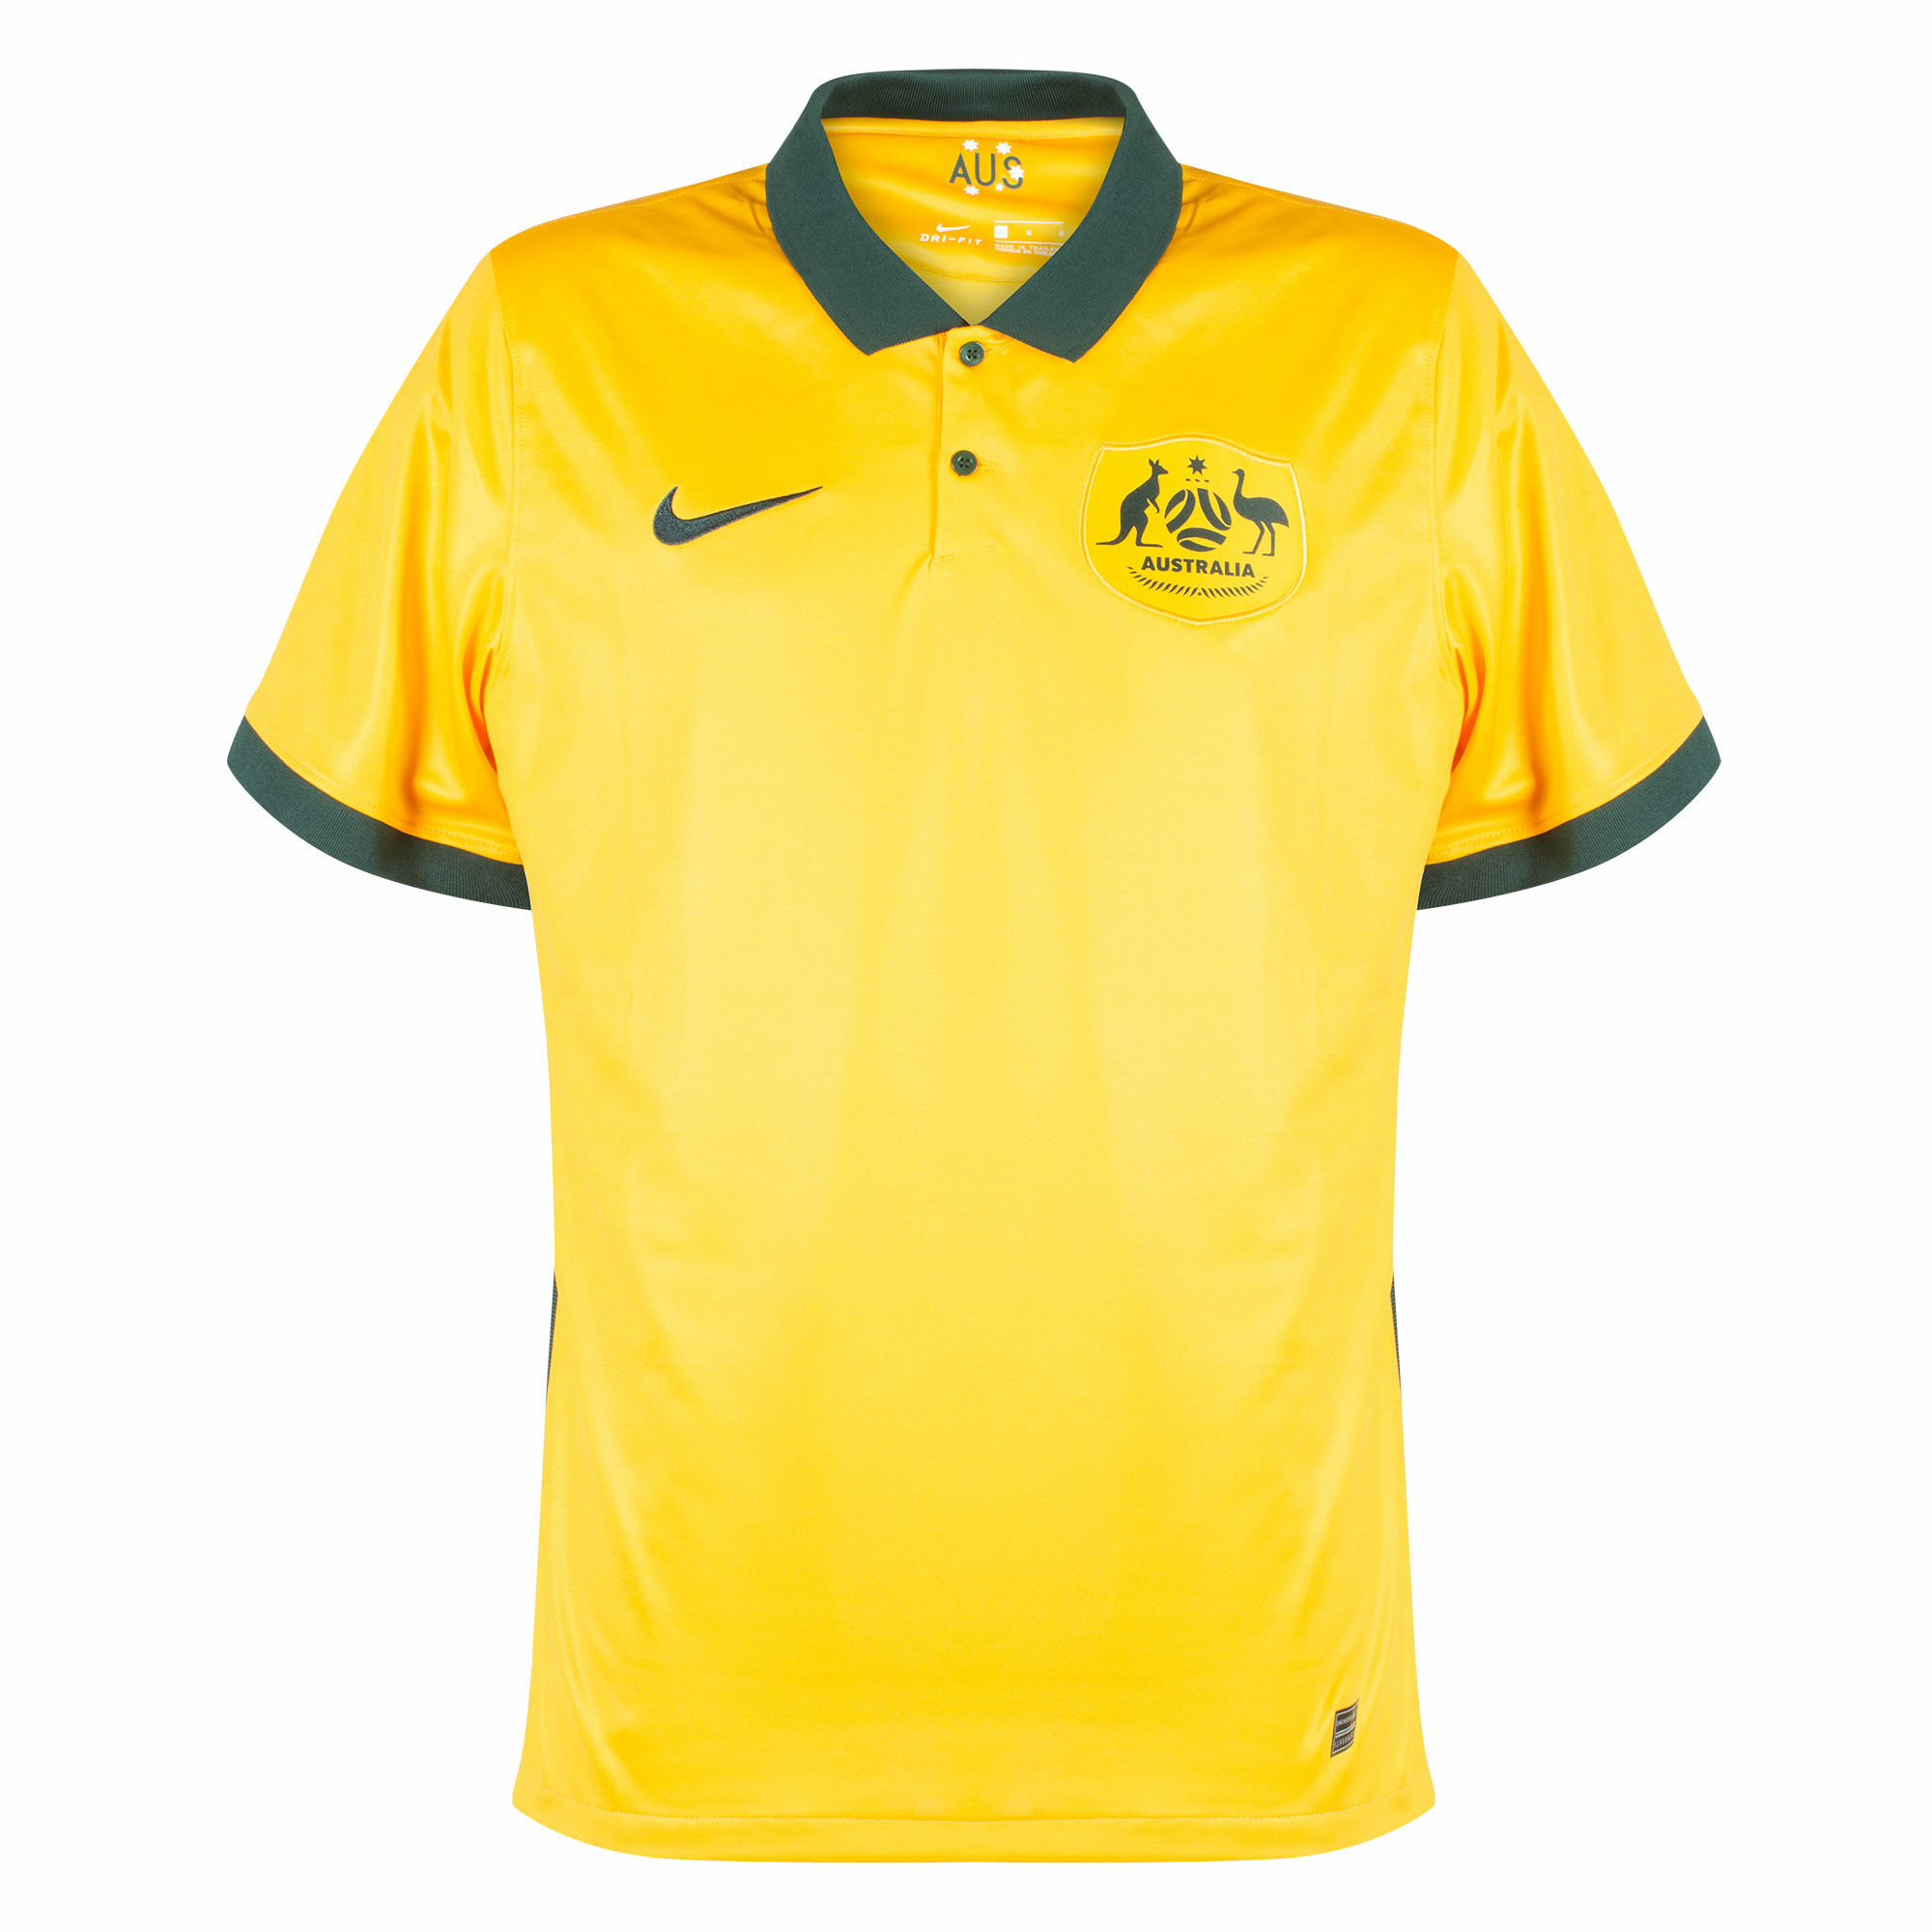 Austrálie - Dres fotbalový - sezóna 2020/21, žlutý, domácí